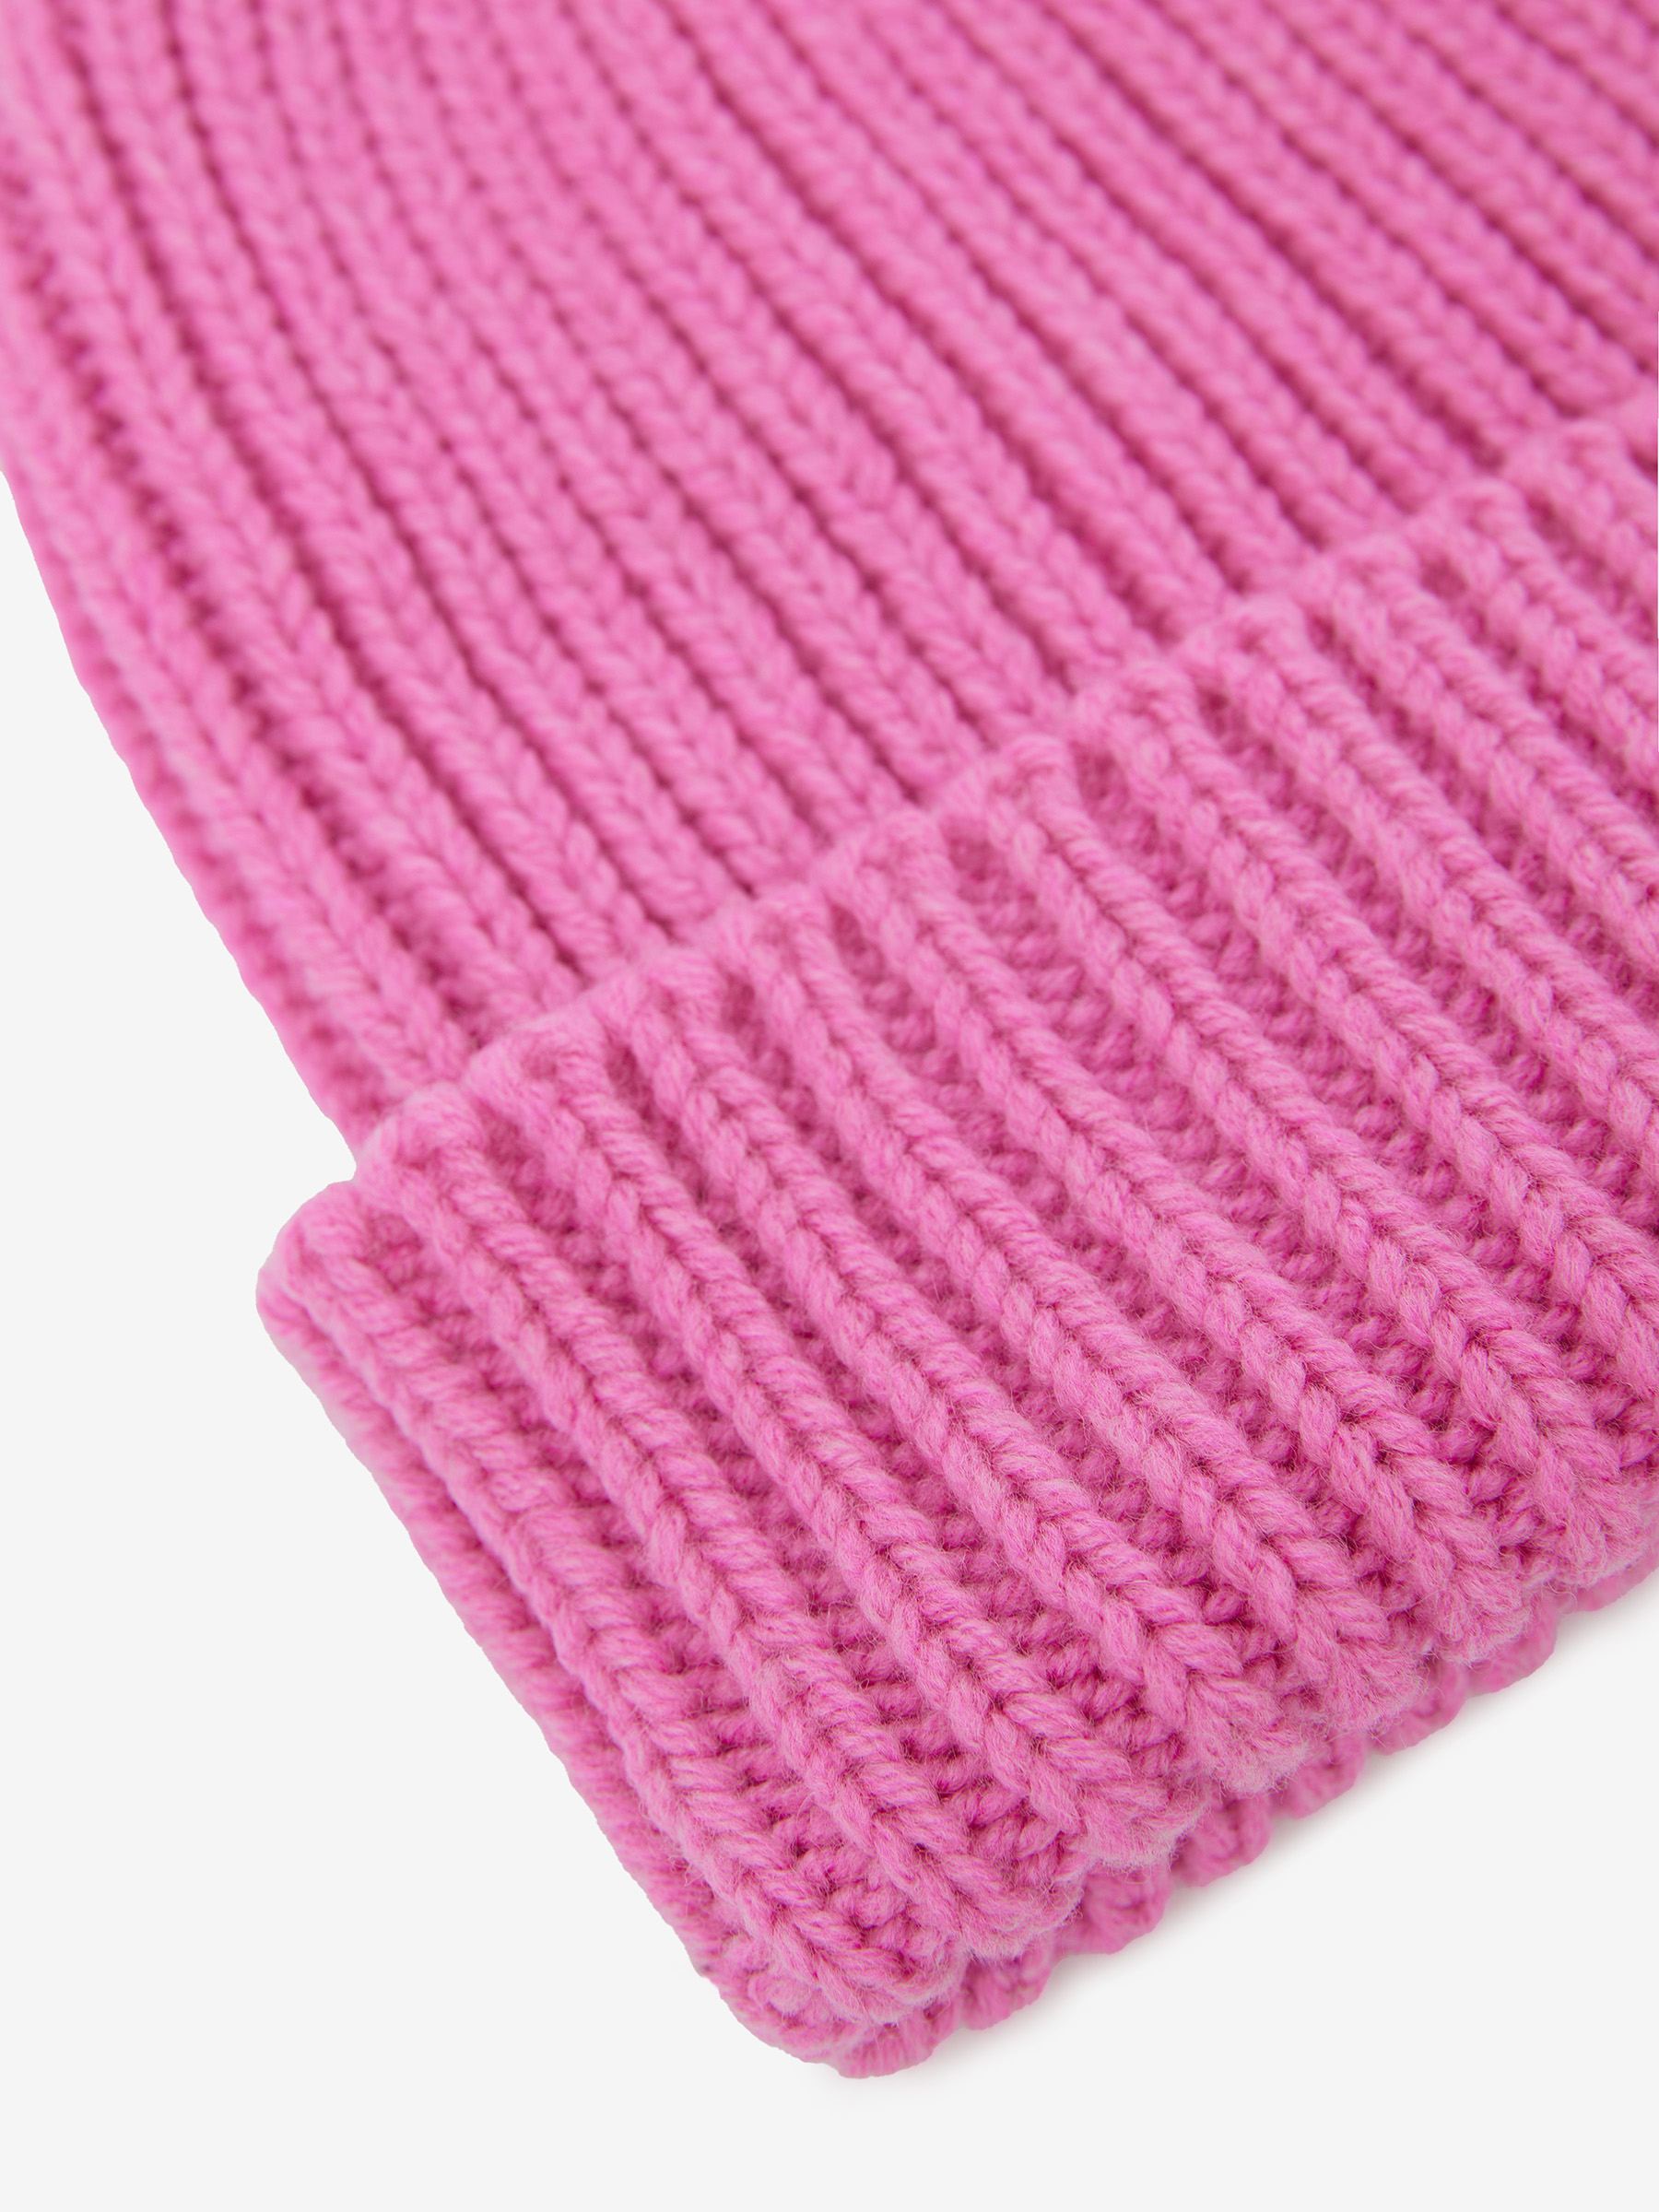 Шапка-бини крупной вязки, розовая фуксия - фото 6